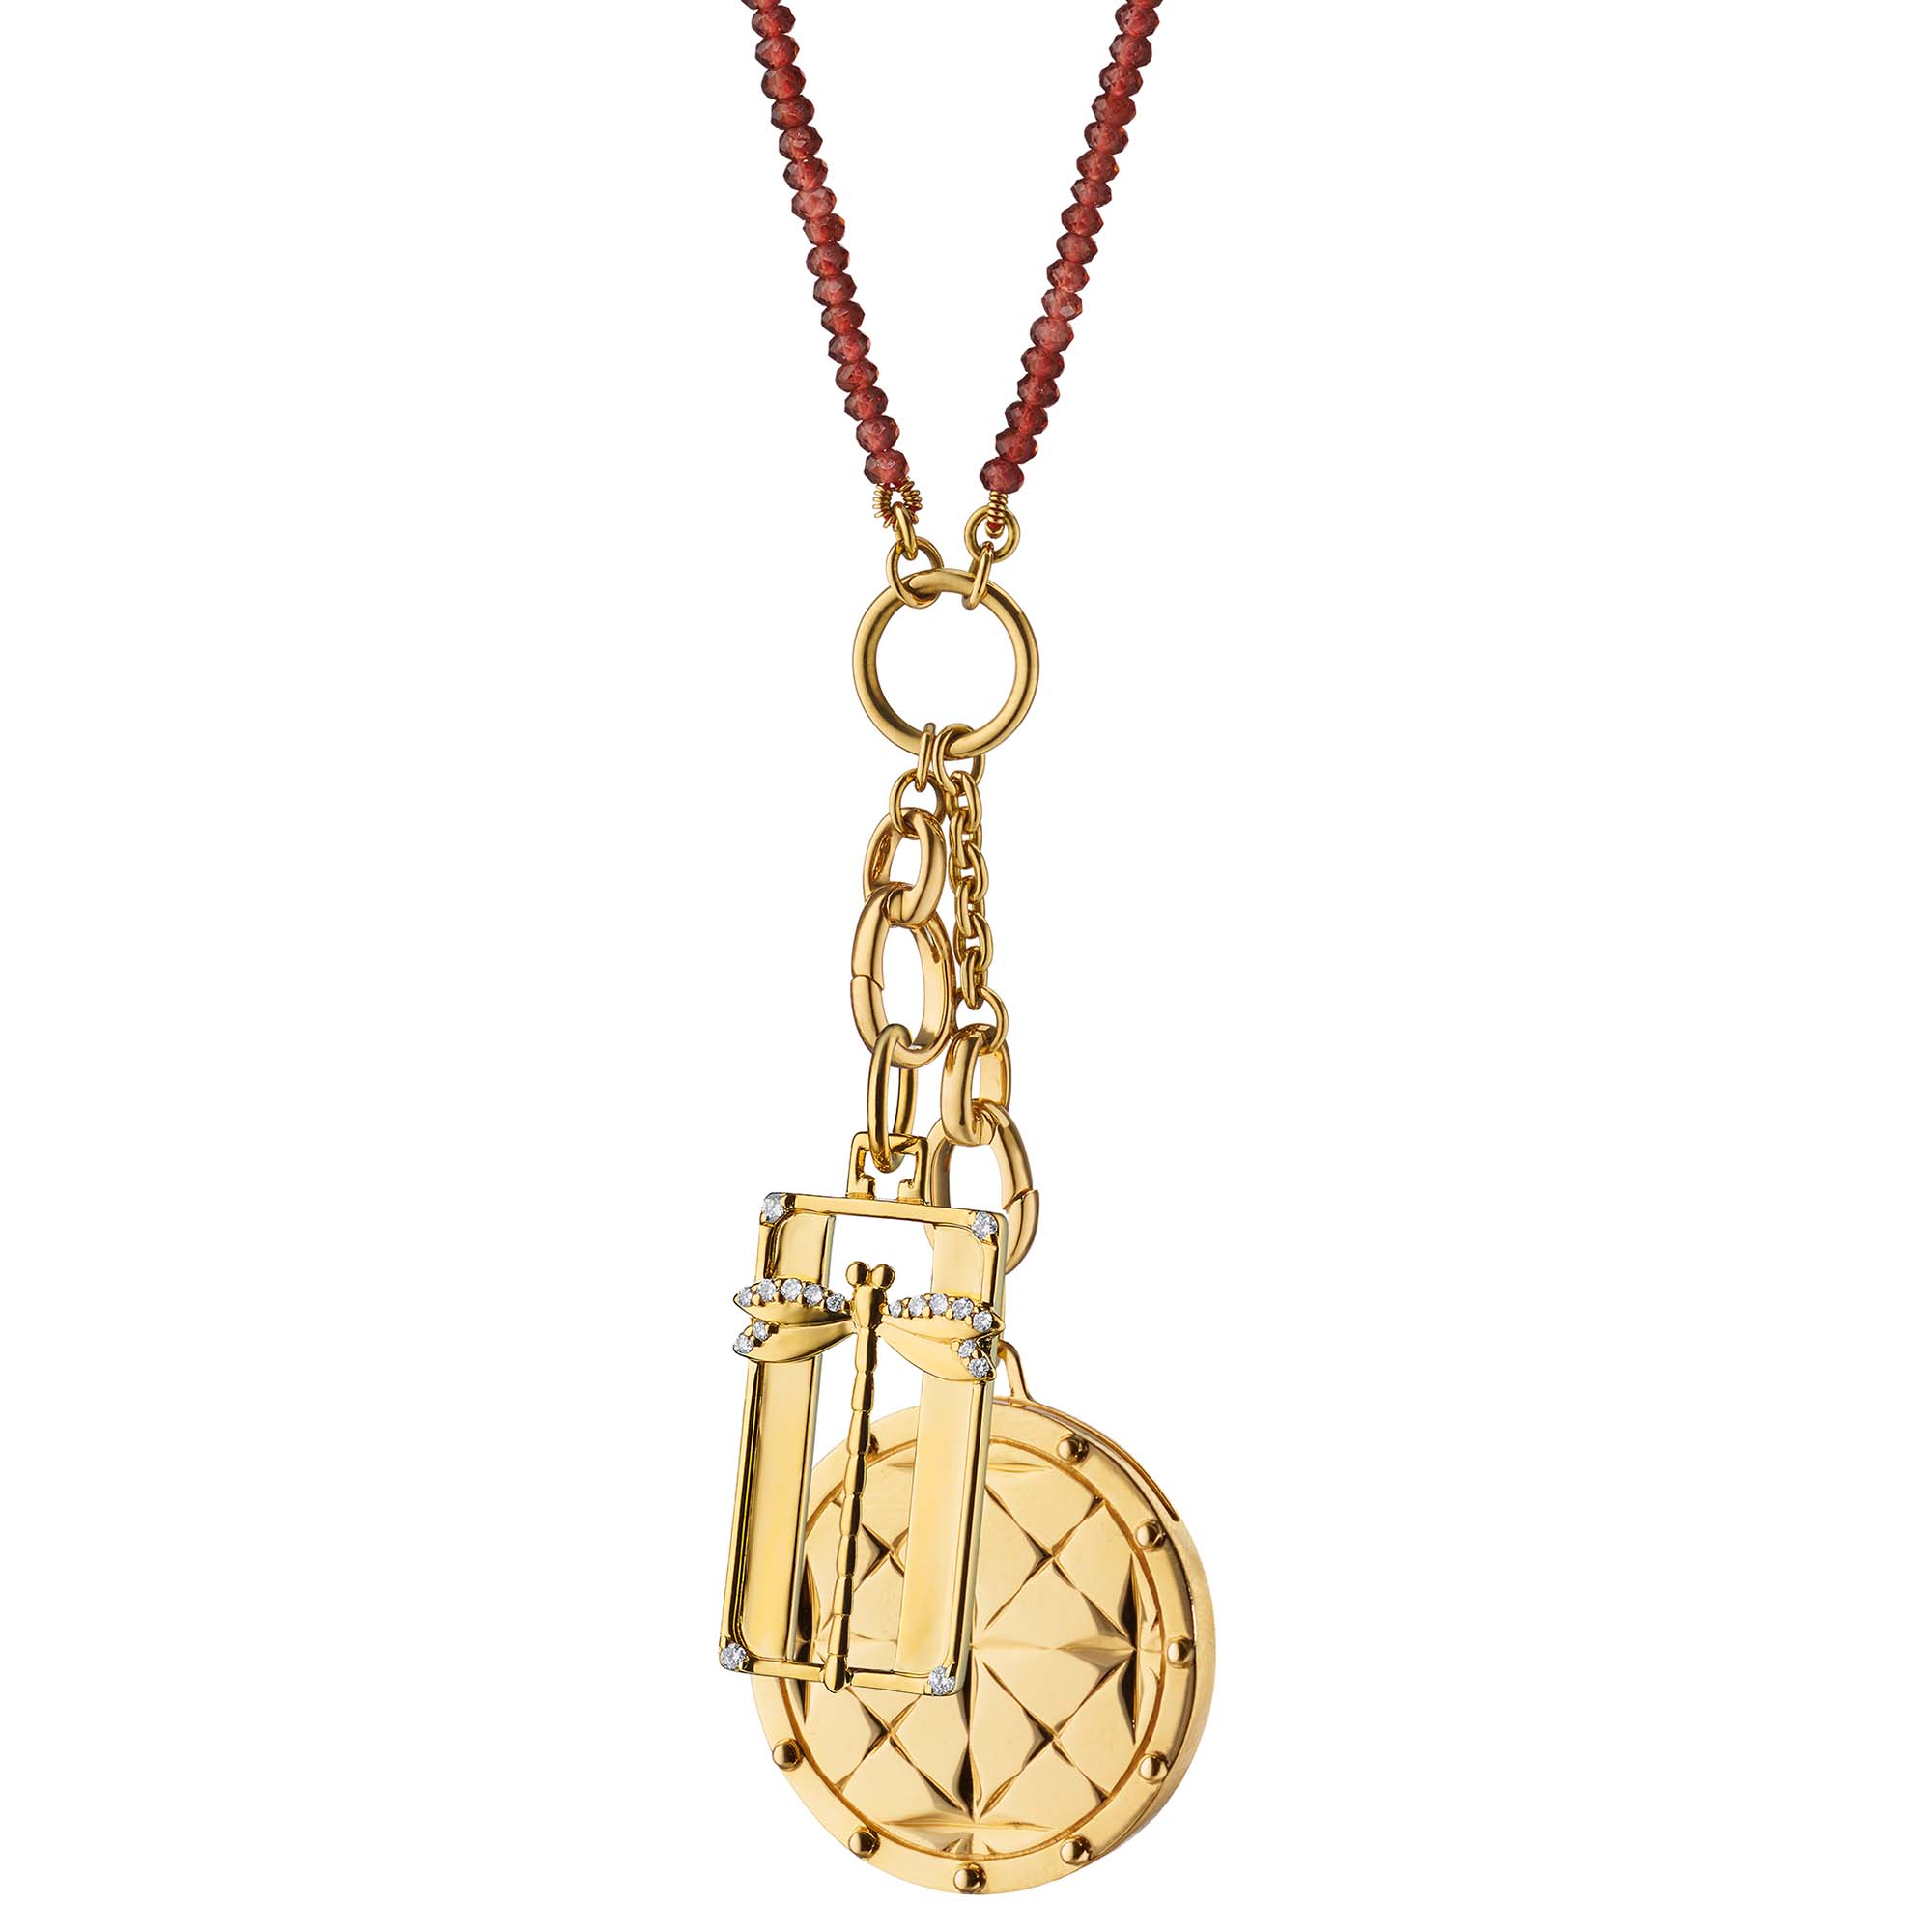 Louis Vuitton logo pendant with bail 3D model 3D printable